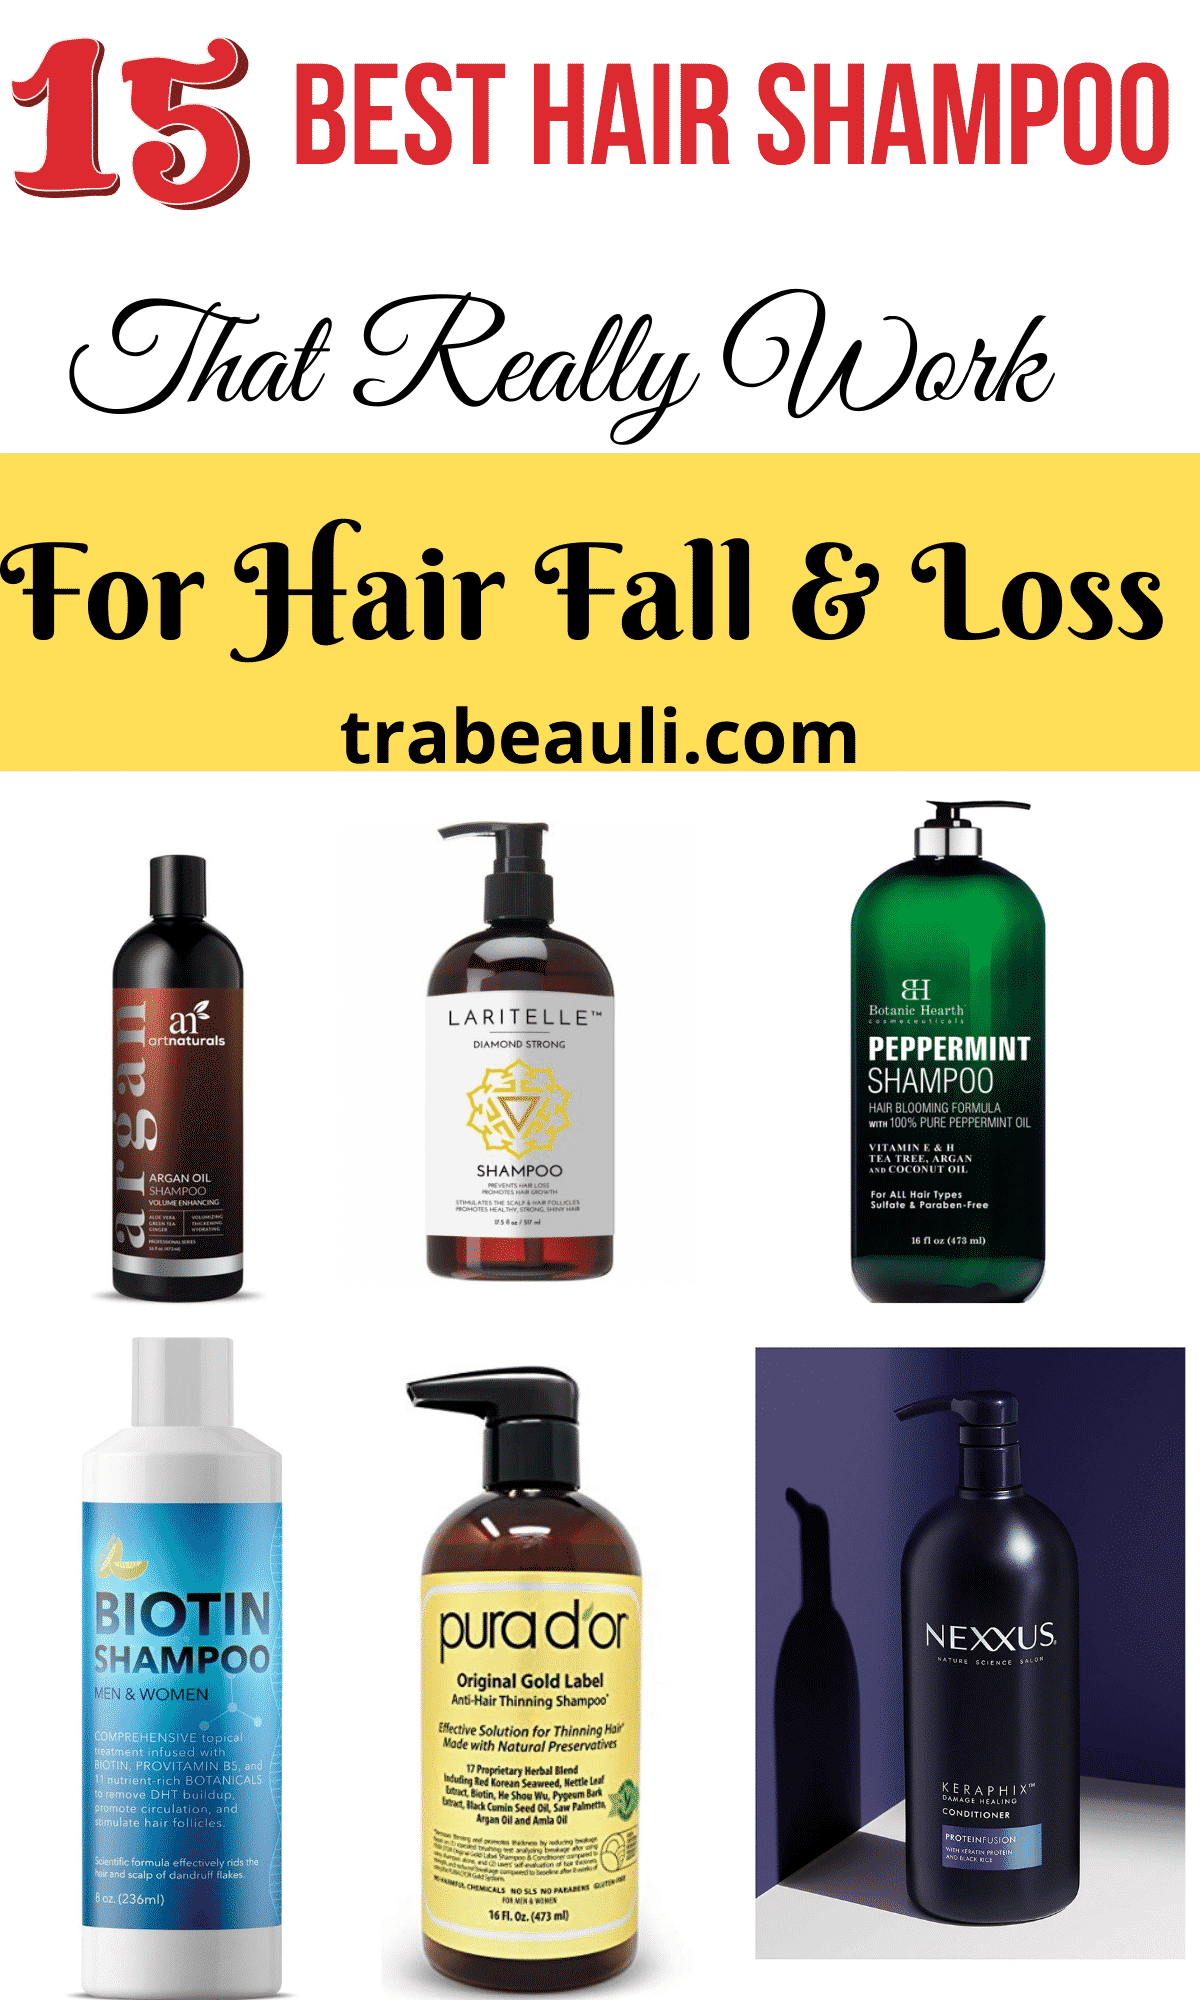 Hair-Fall-Shampoos-Reviews